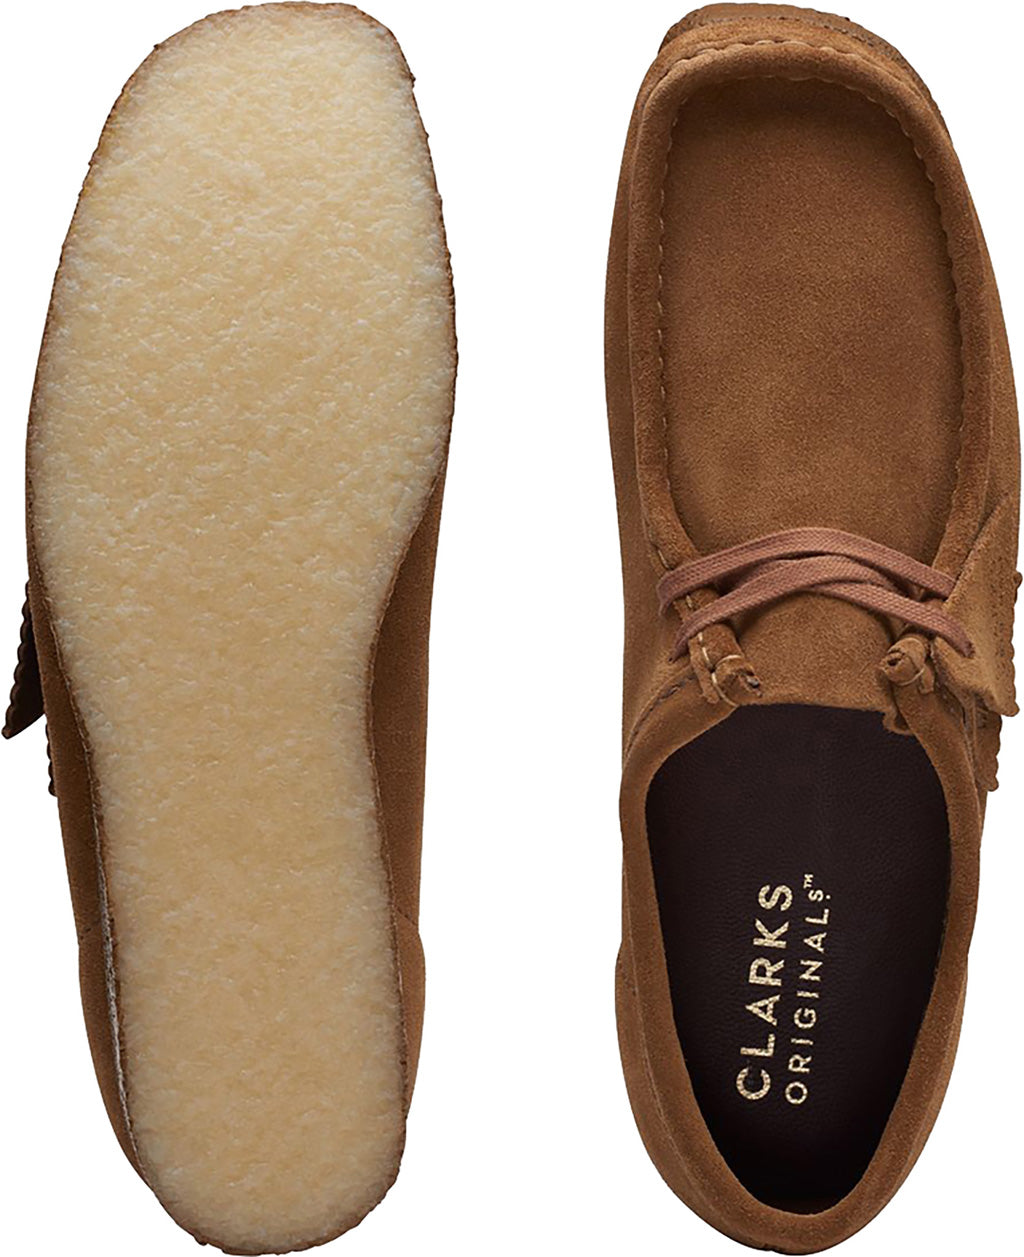 Clarks Originals Wallabee Shoe - Men's